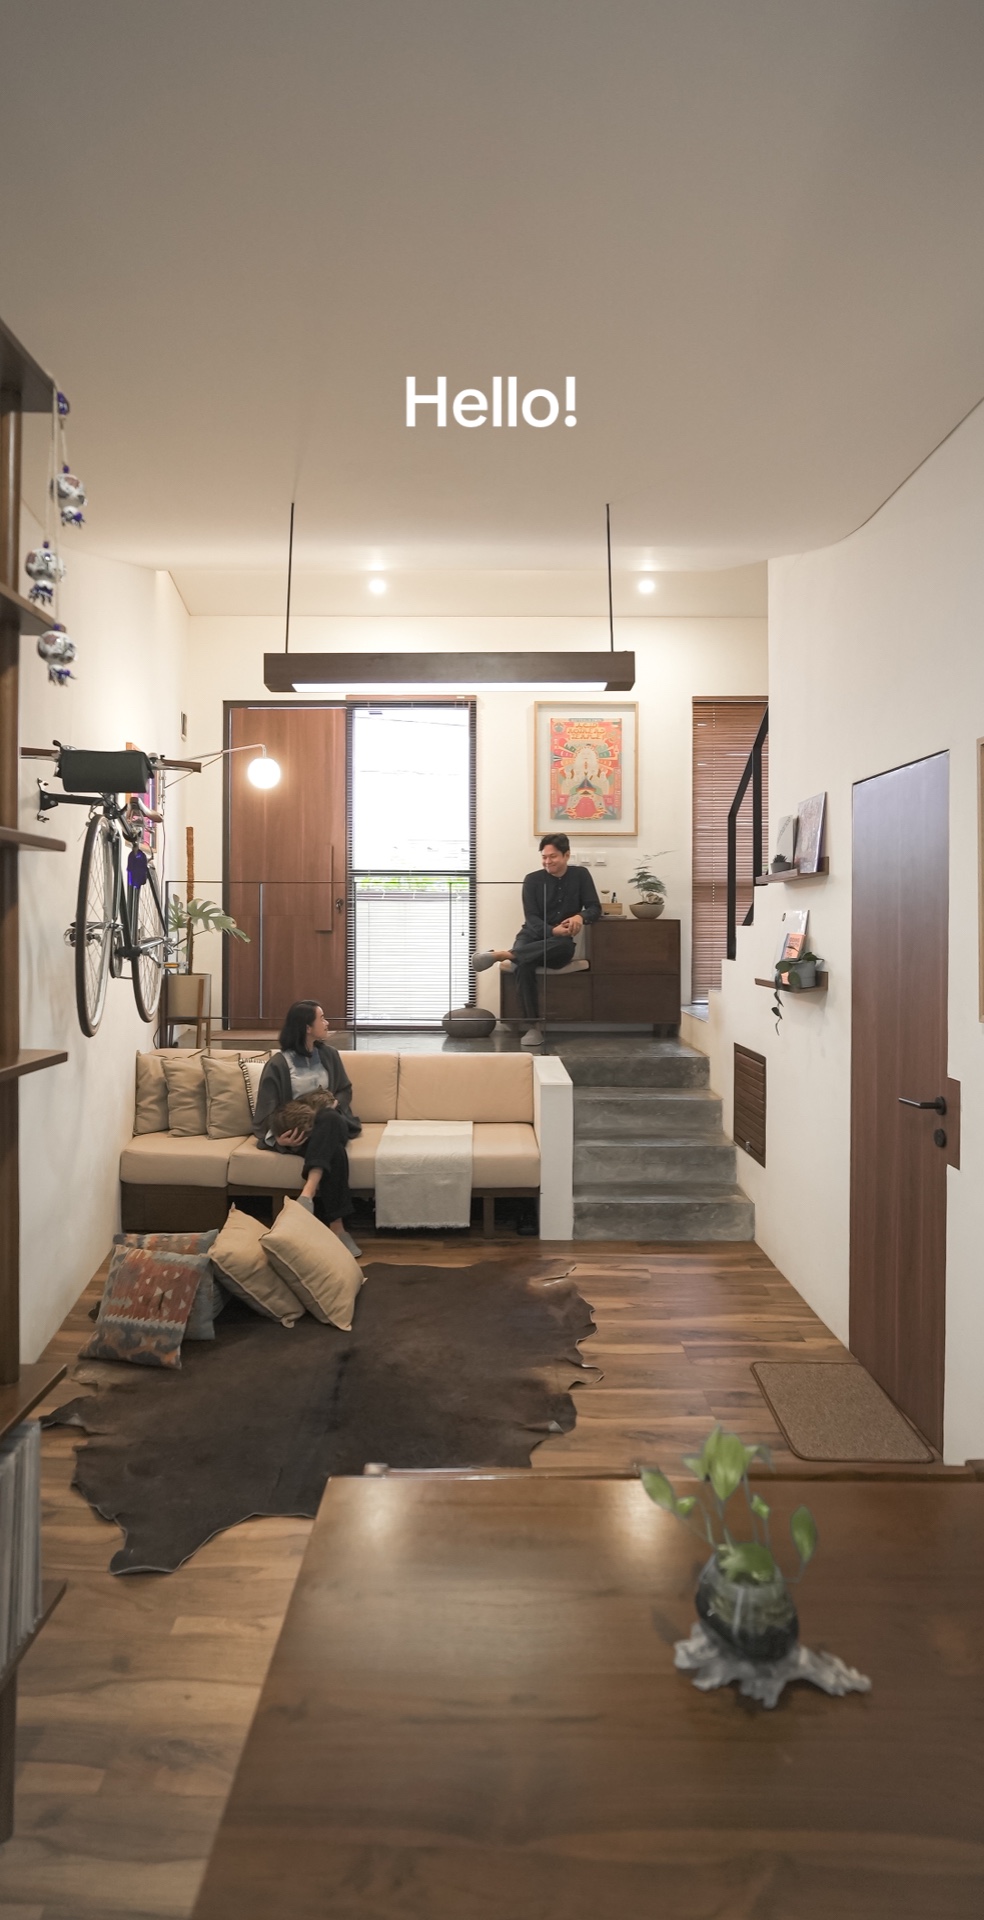 Pasangan milenial ini hidup nyaman di rumah minimalis di gang rawan banjir, intip 9 potret interiornya